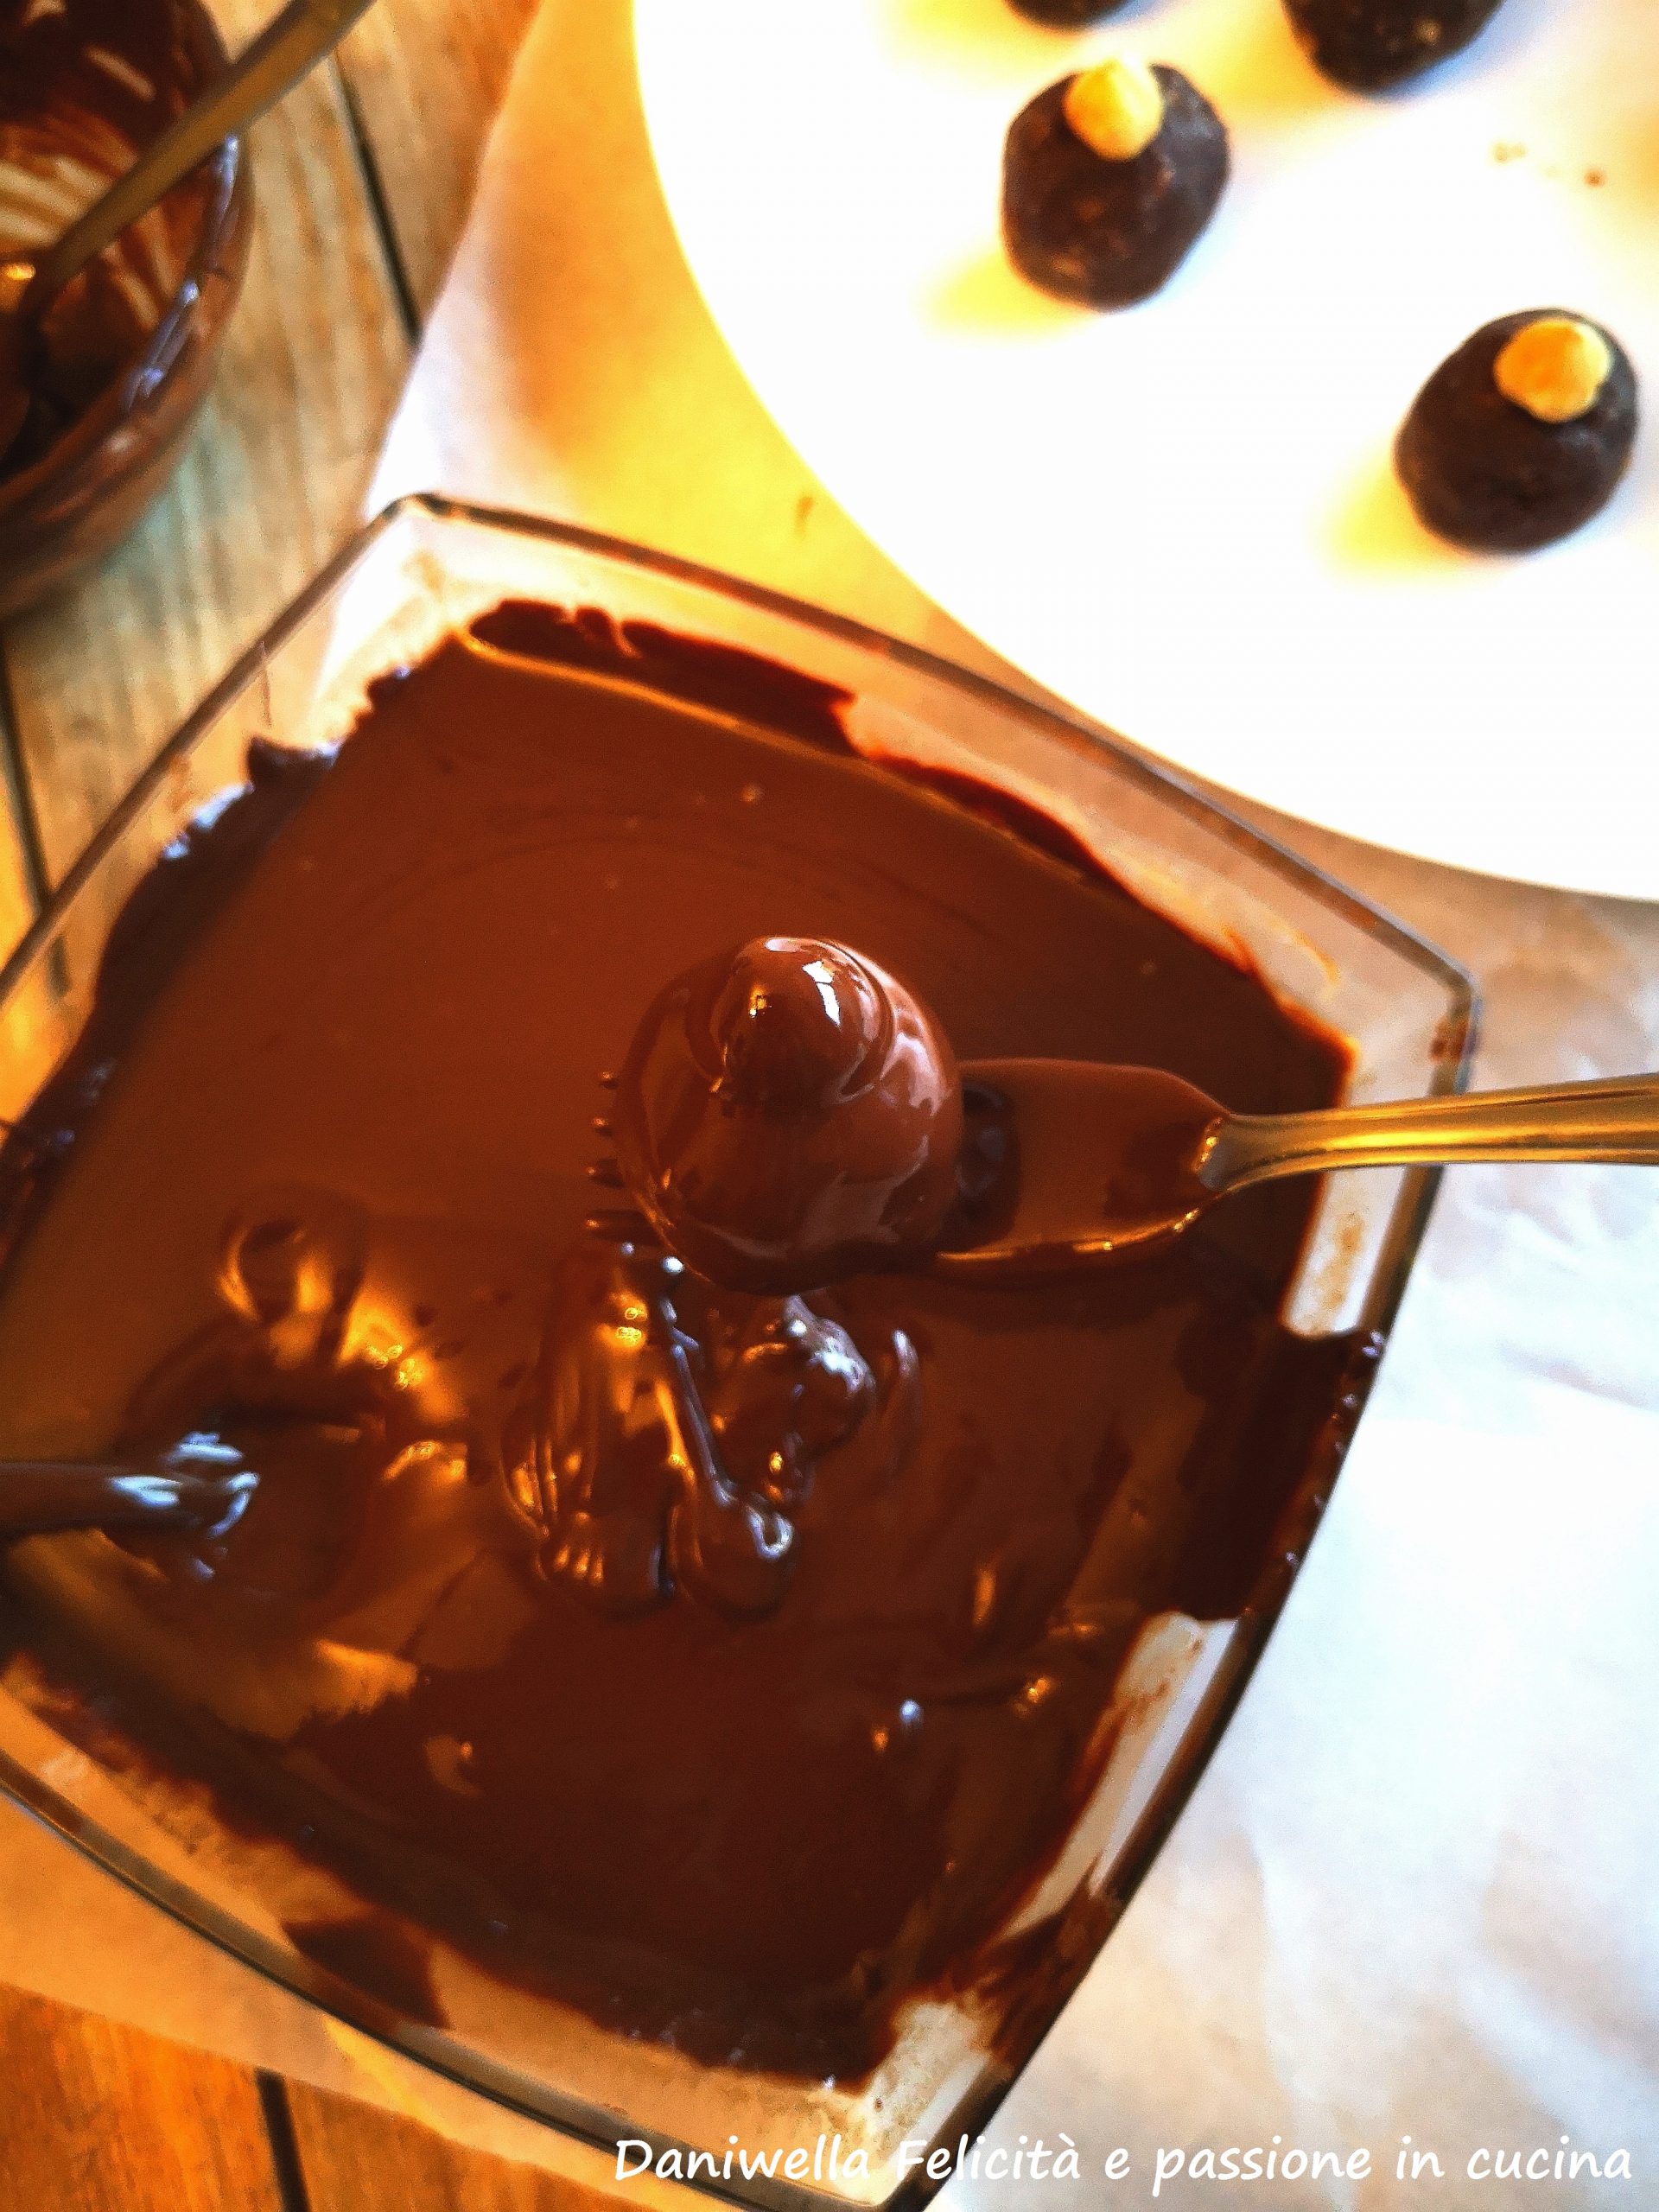 Sciogliete il cioccolato fondente e il burro a bagno Maria,. Mettete in una ciotolina alta e stretta il cioccolato. Poggiate ogni pallina su una forchetta e immergetela nel cioccolato fluido e privo di grumi. Tirate su la forchetta in modo che il cioccolato in eccesso coli, eppoi riponete ogni cioccolatino sulla carta forno.